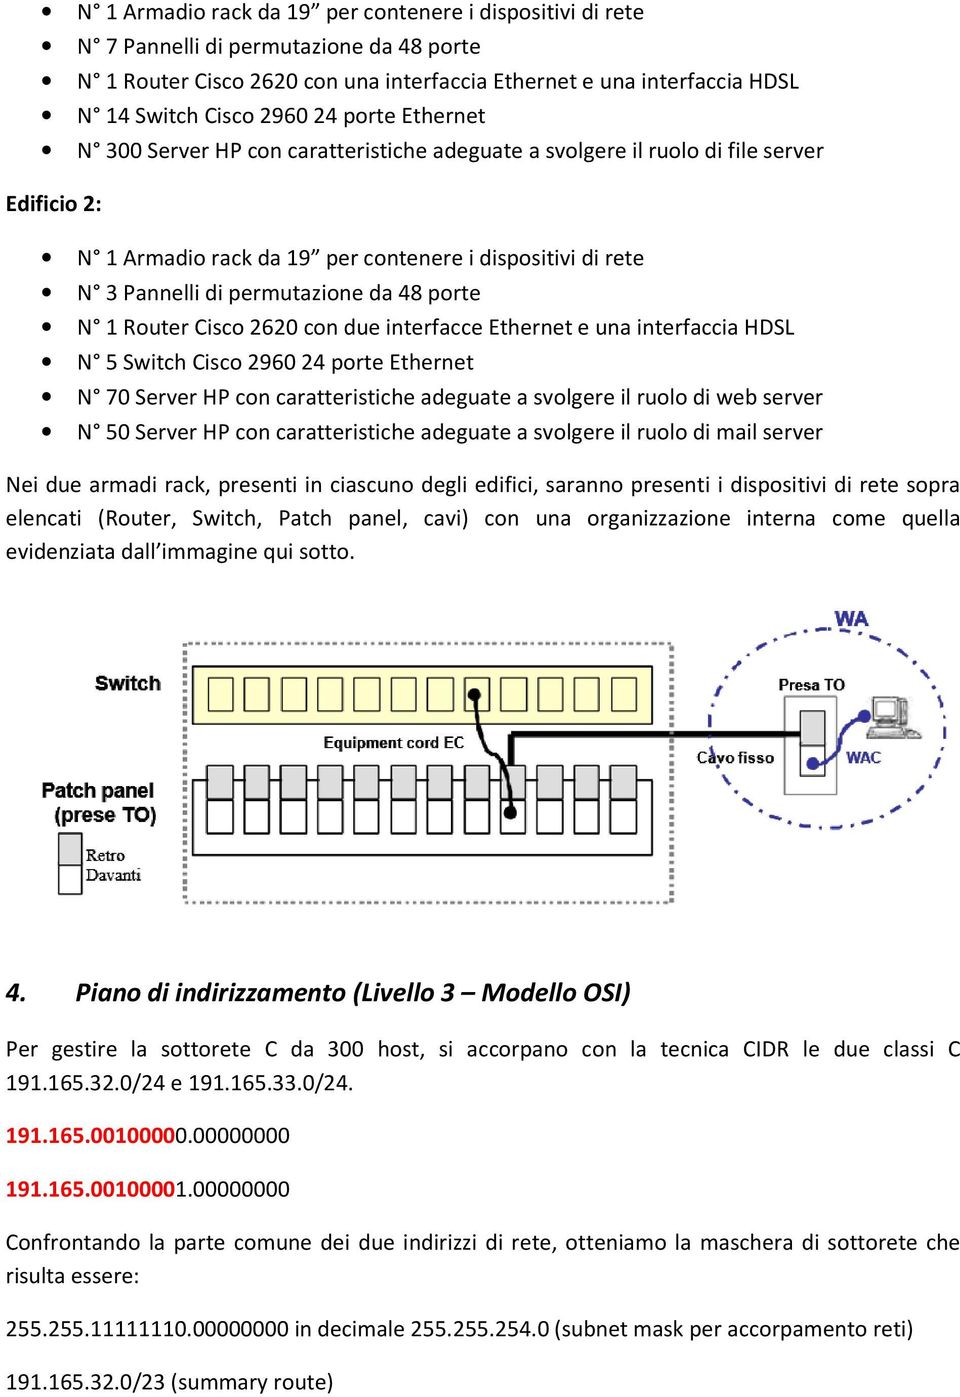 48 porte N 1 Router Cisco 2620 con due interfacce Ethernet e una interfaccia HDSL N 5 Switch Cisco 2960 24 porte Ethernet N 70 Server HP con caratteristiche adeguate a svolgere il ruolo di web server